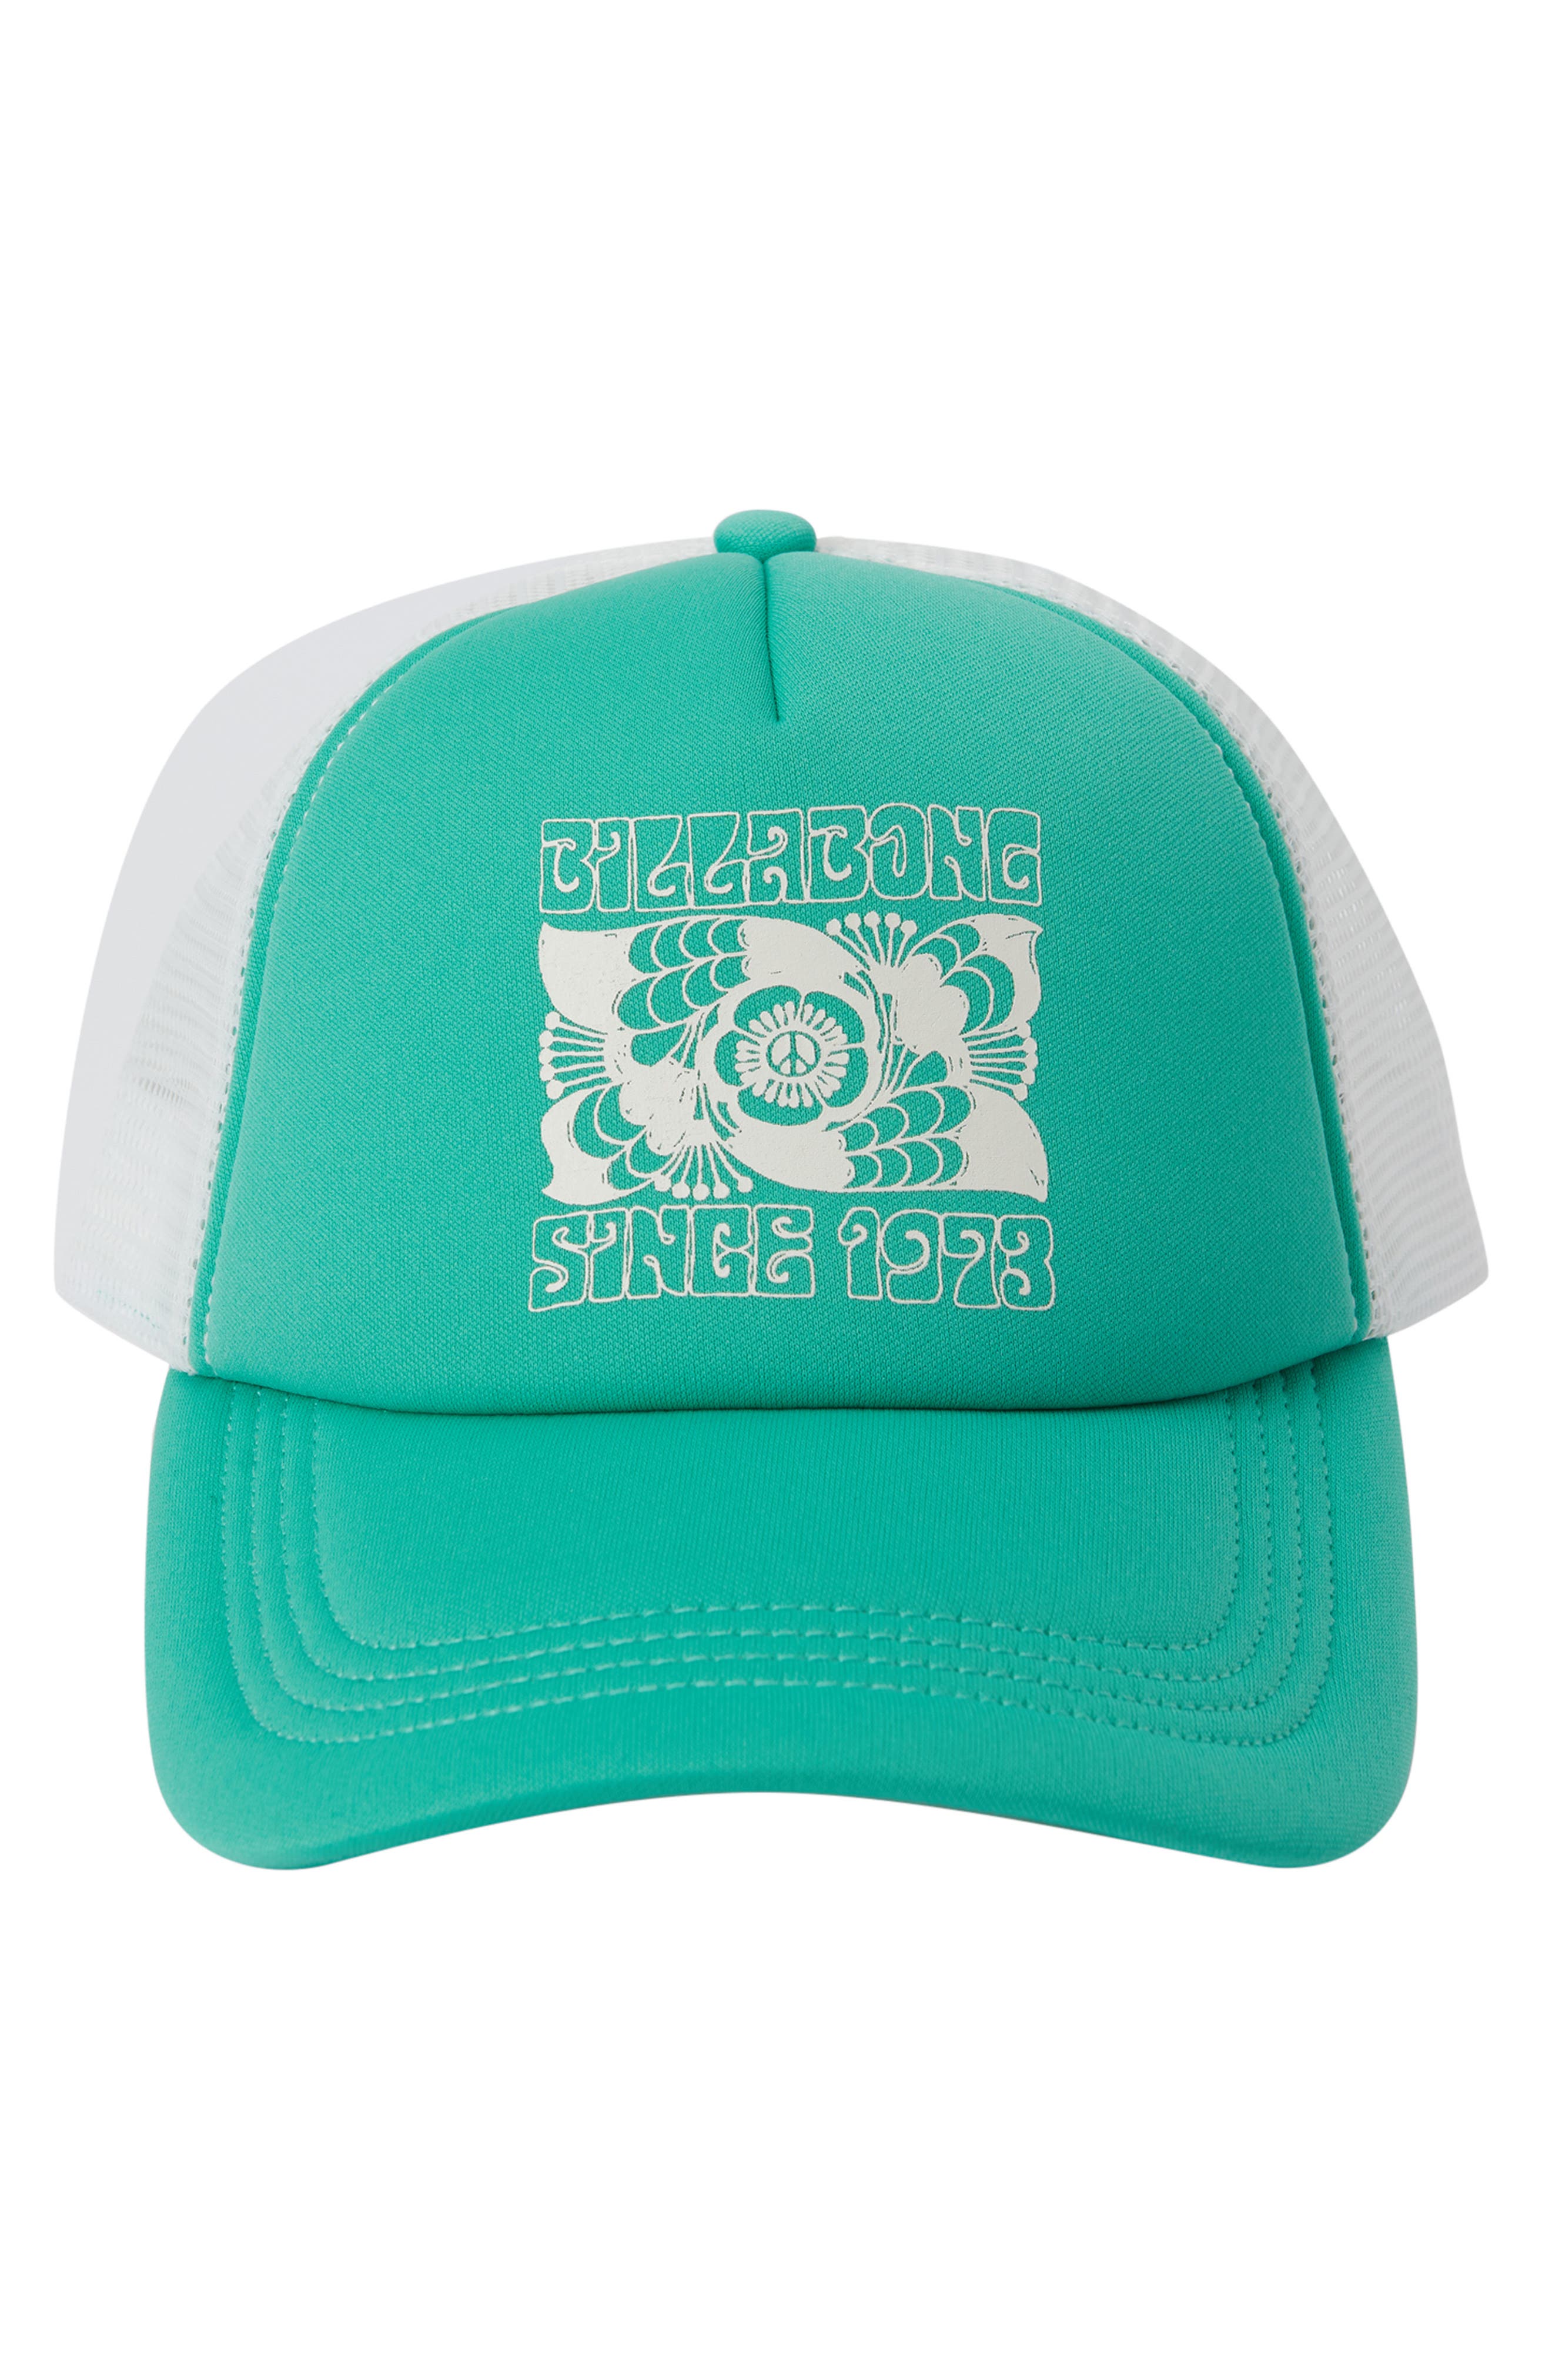 Sweet Trucker in | Closet Billabong Across Grass Waves Smart Hat